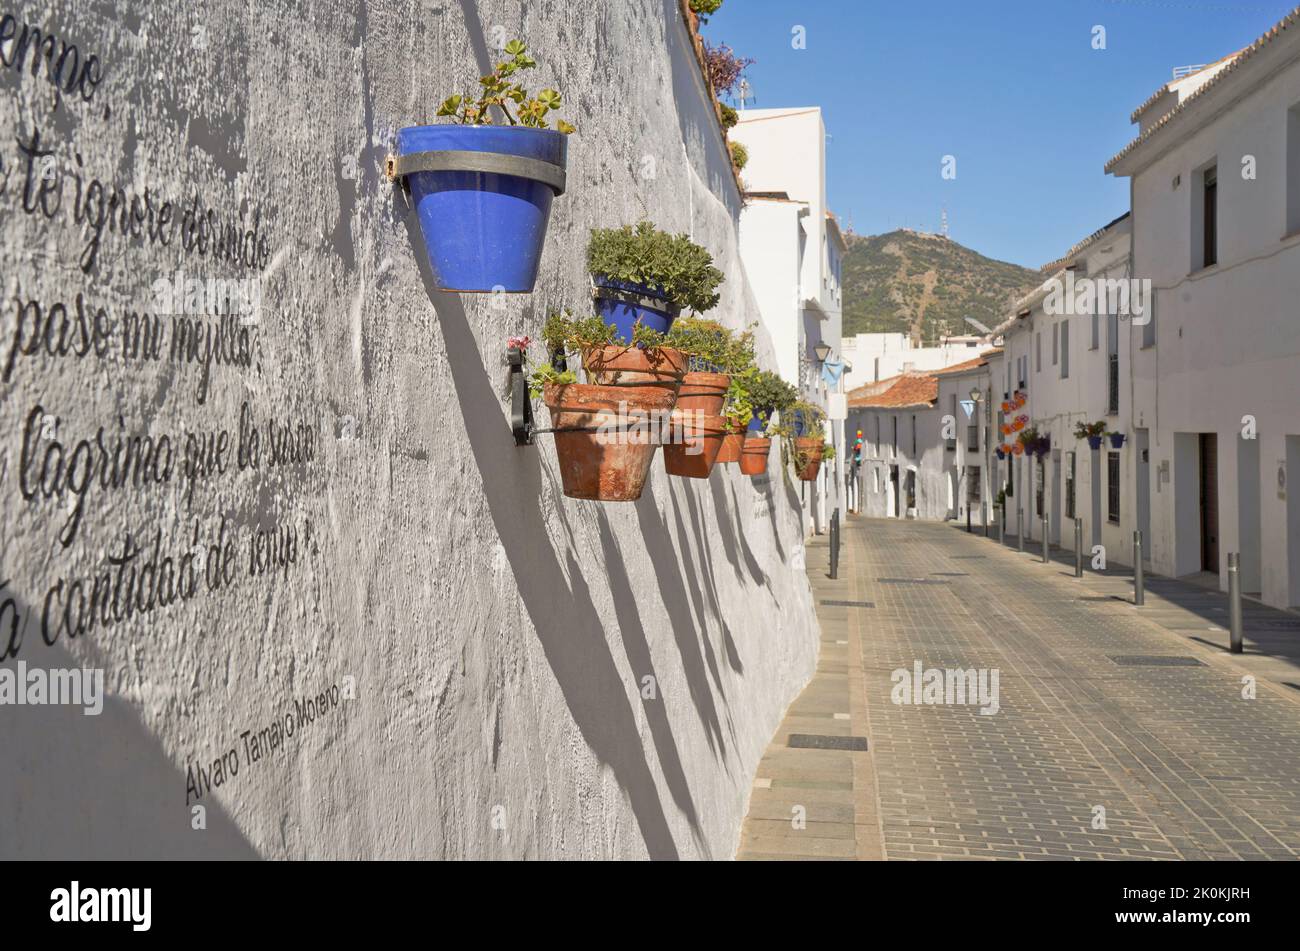 Vasi di fiori che decorano le strade strette di bianco villaggio di Mijas pueblo, Andalusia, provincia di Malaga, Costa del sol, Spagna Foto Stock